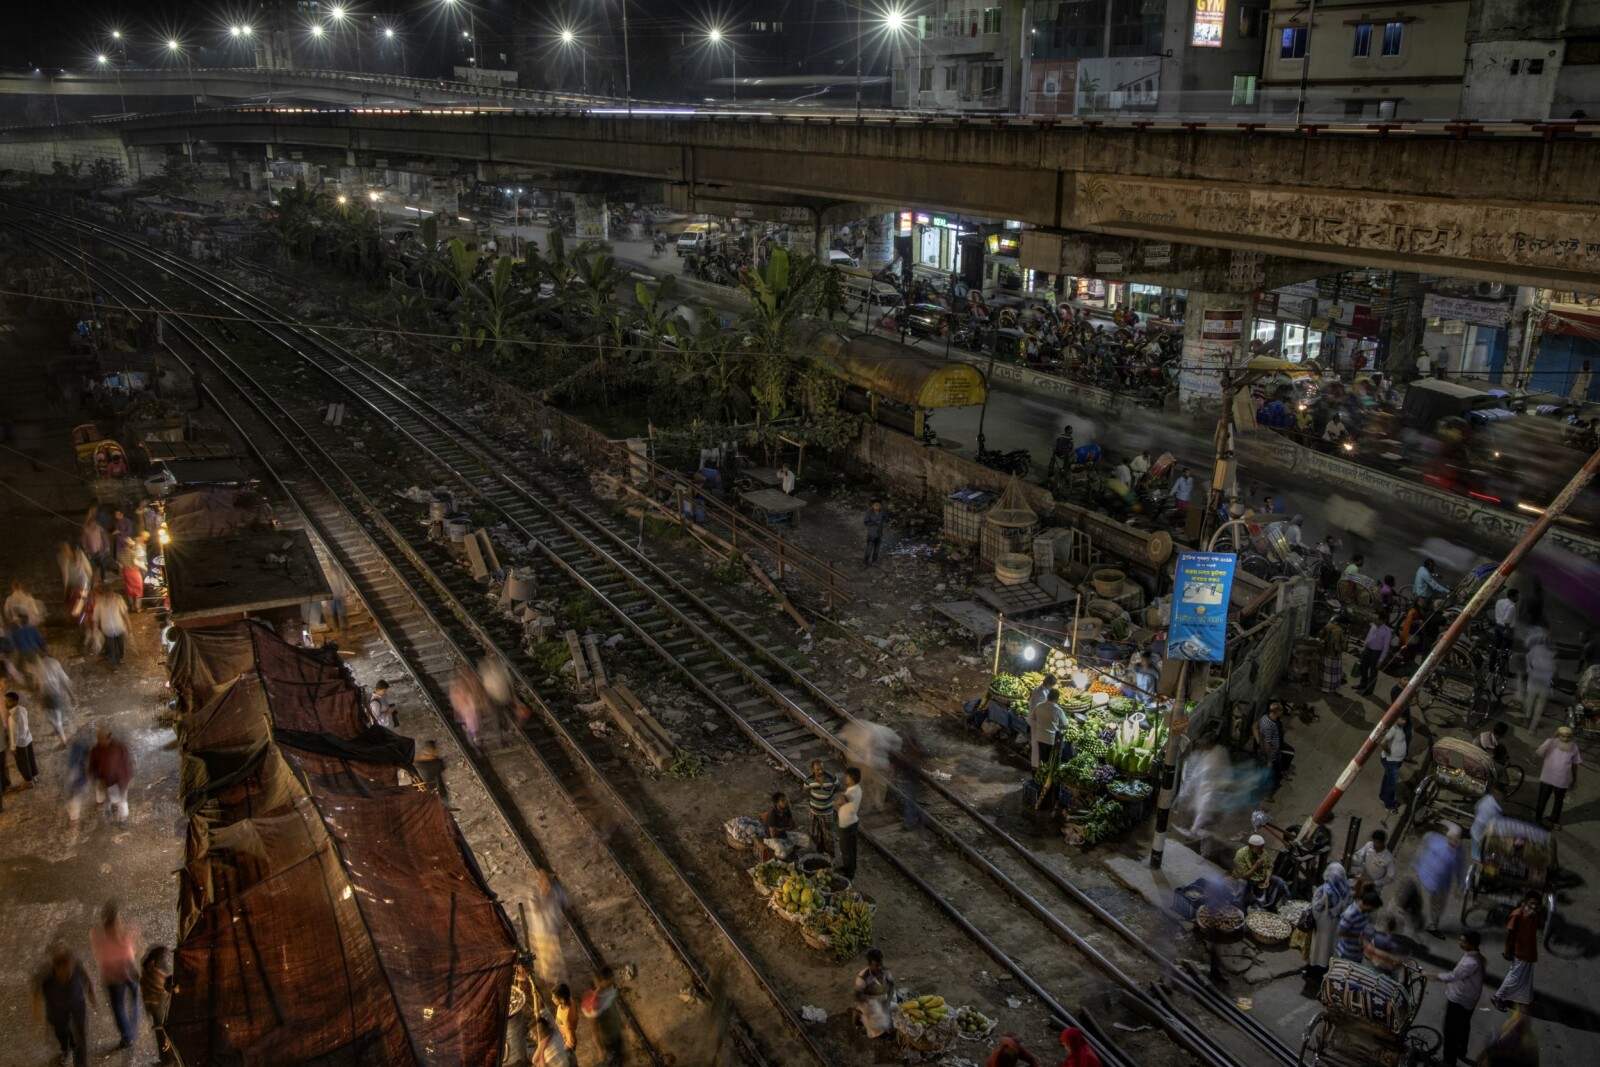 <b>KAOS:</b> Ved fiskemarkedet i Dhaka syder det av liv om kvelden. Det virrer av folk i skinnegangen, mens biler, sykler og mopeder ruller i stri strøm over togovergangen. Når togene da kommer dundrende i 50 km/t, skal alt og alle ut av skinnegangen. Det går ikke alltid som det skal.